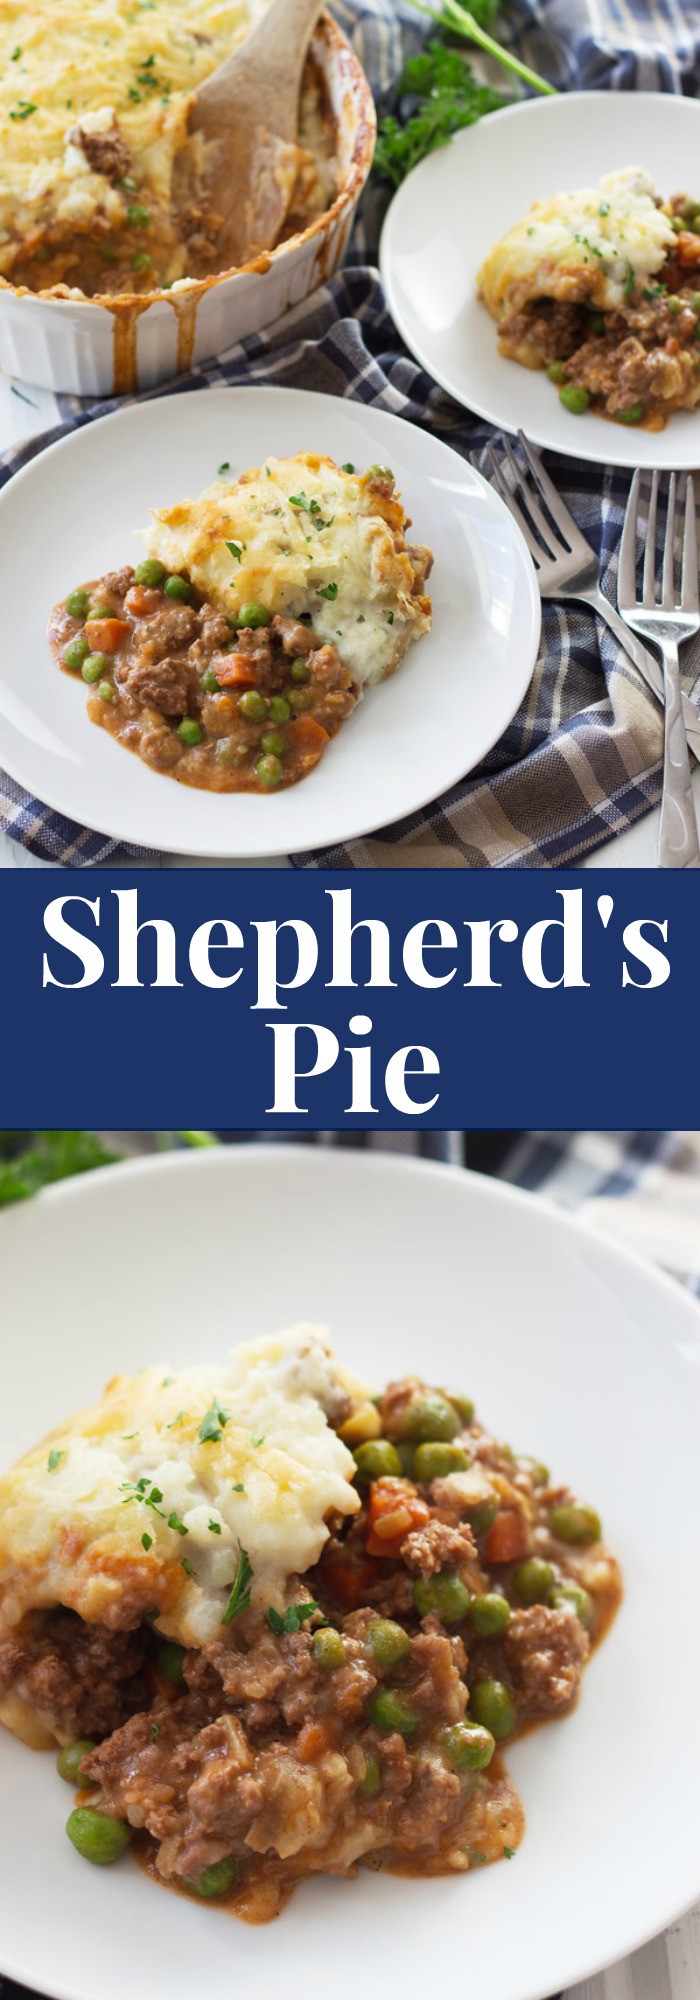 Shepherd's Pie with text overlay